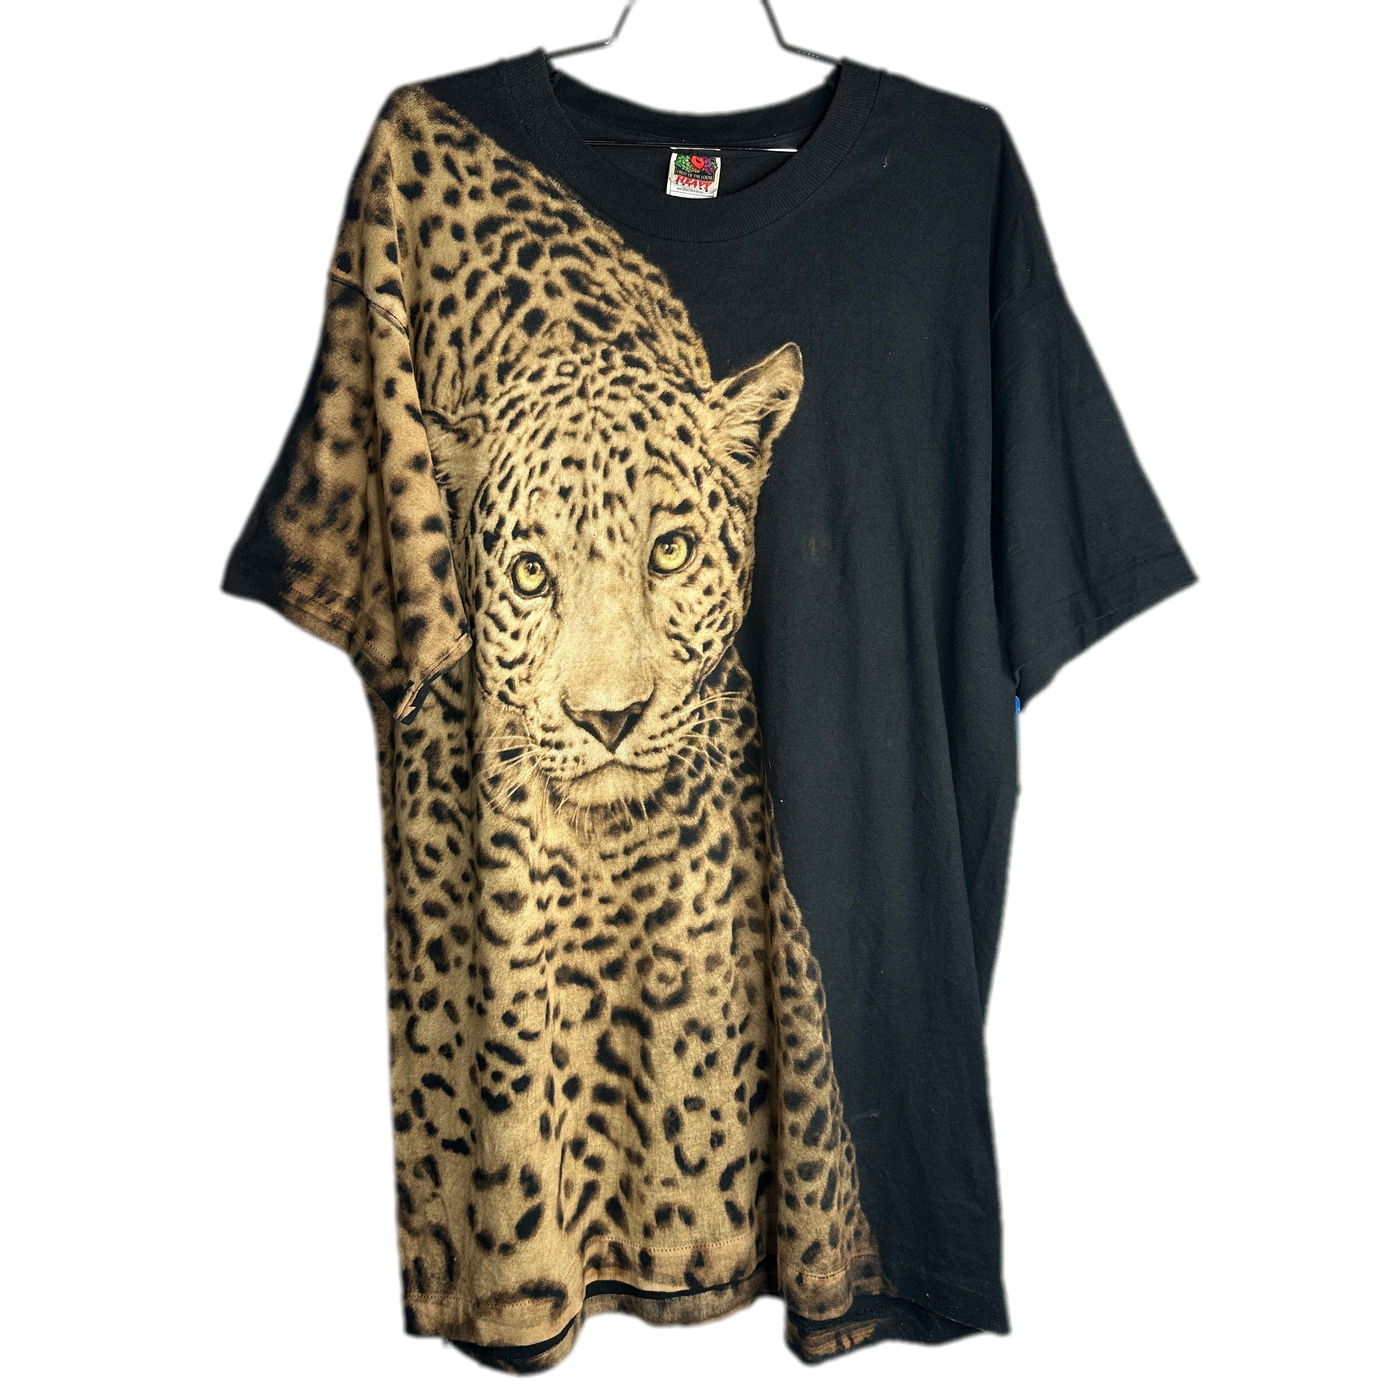 90's Cheetah Graphic T-shirt sz XL